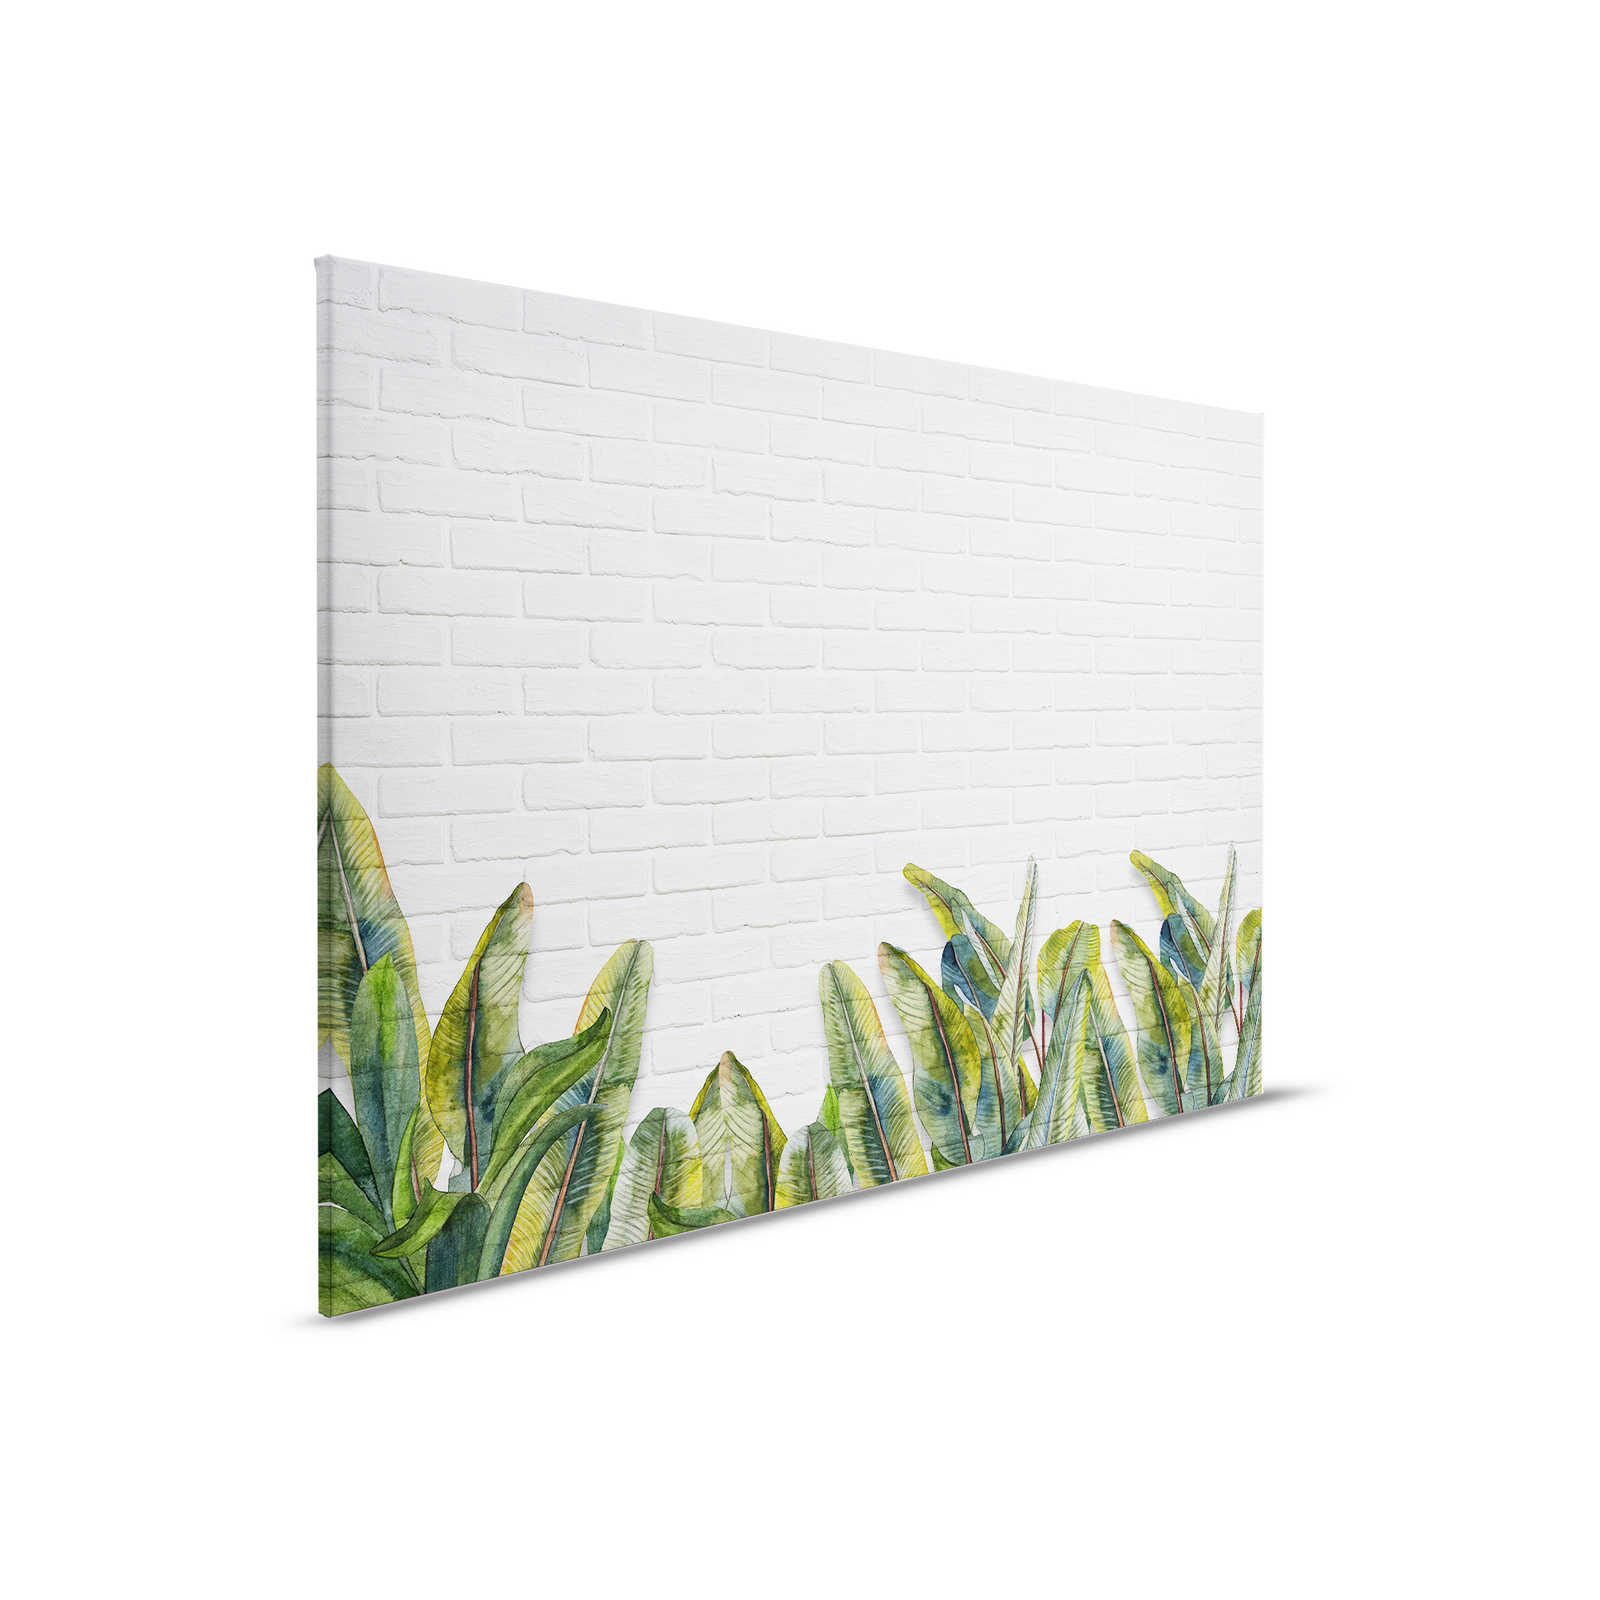 Toile avec feuilles devant un mur de briques blanches - 0,90 m x 0,60 m
